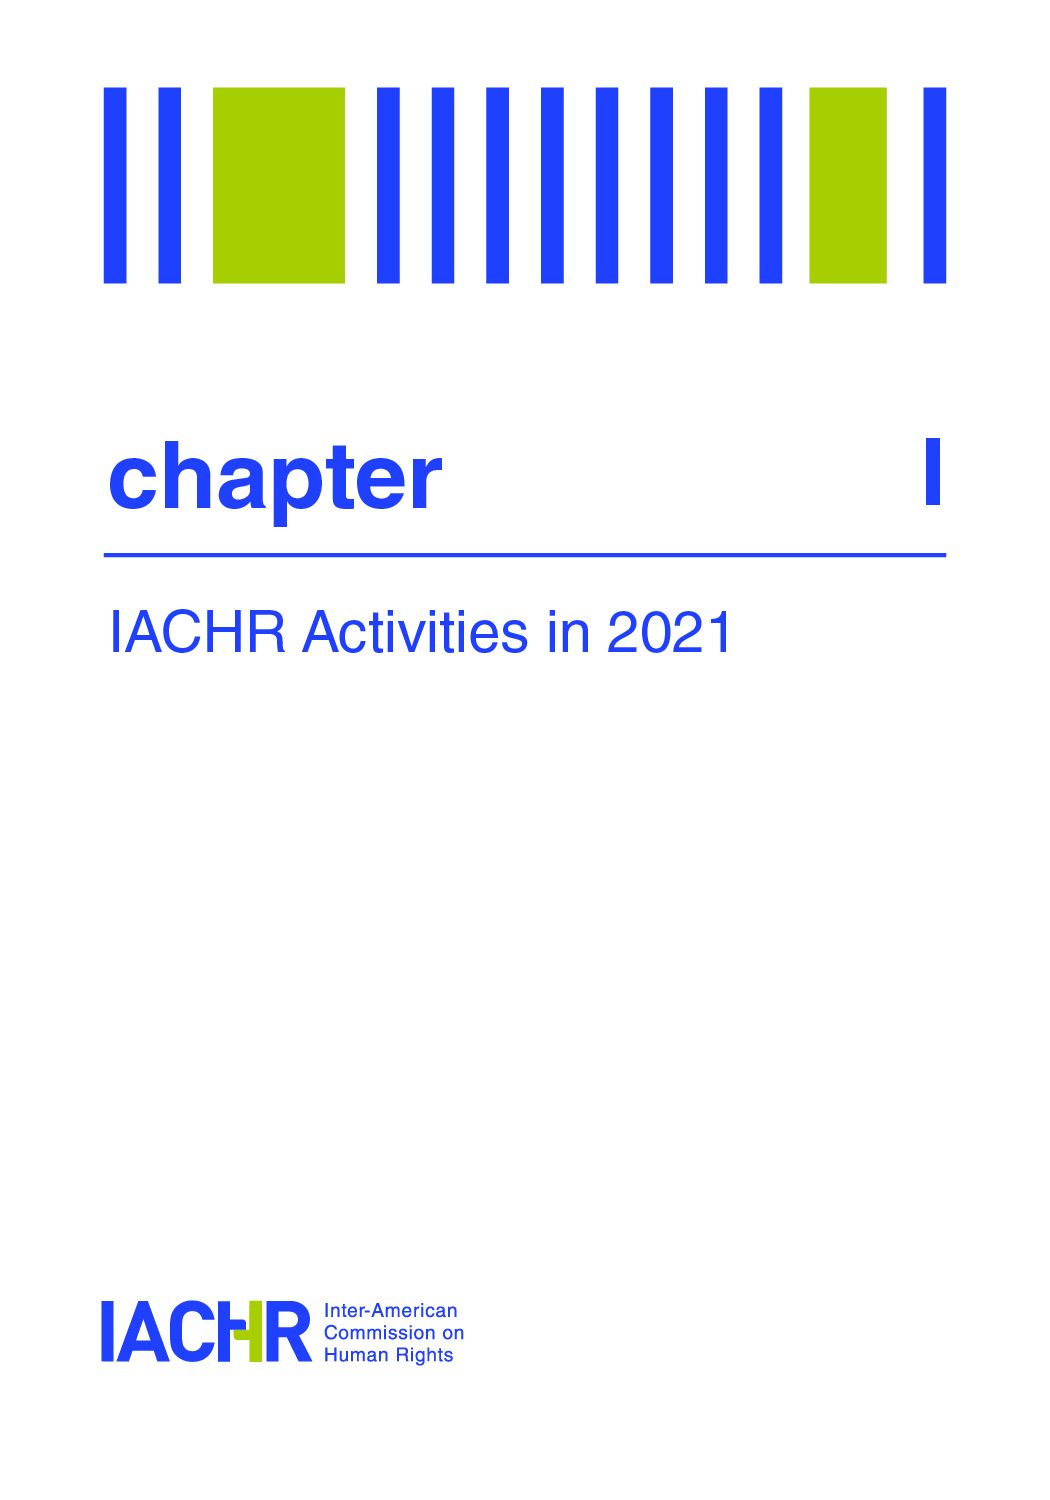 IACHR Activities in 2021